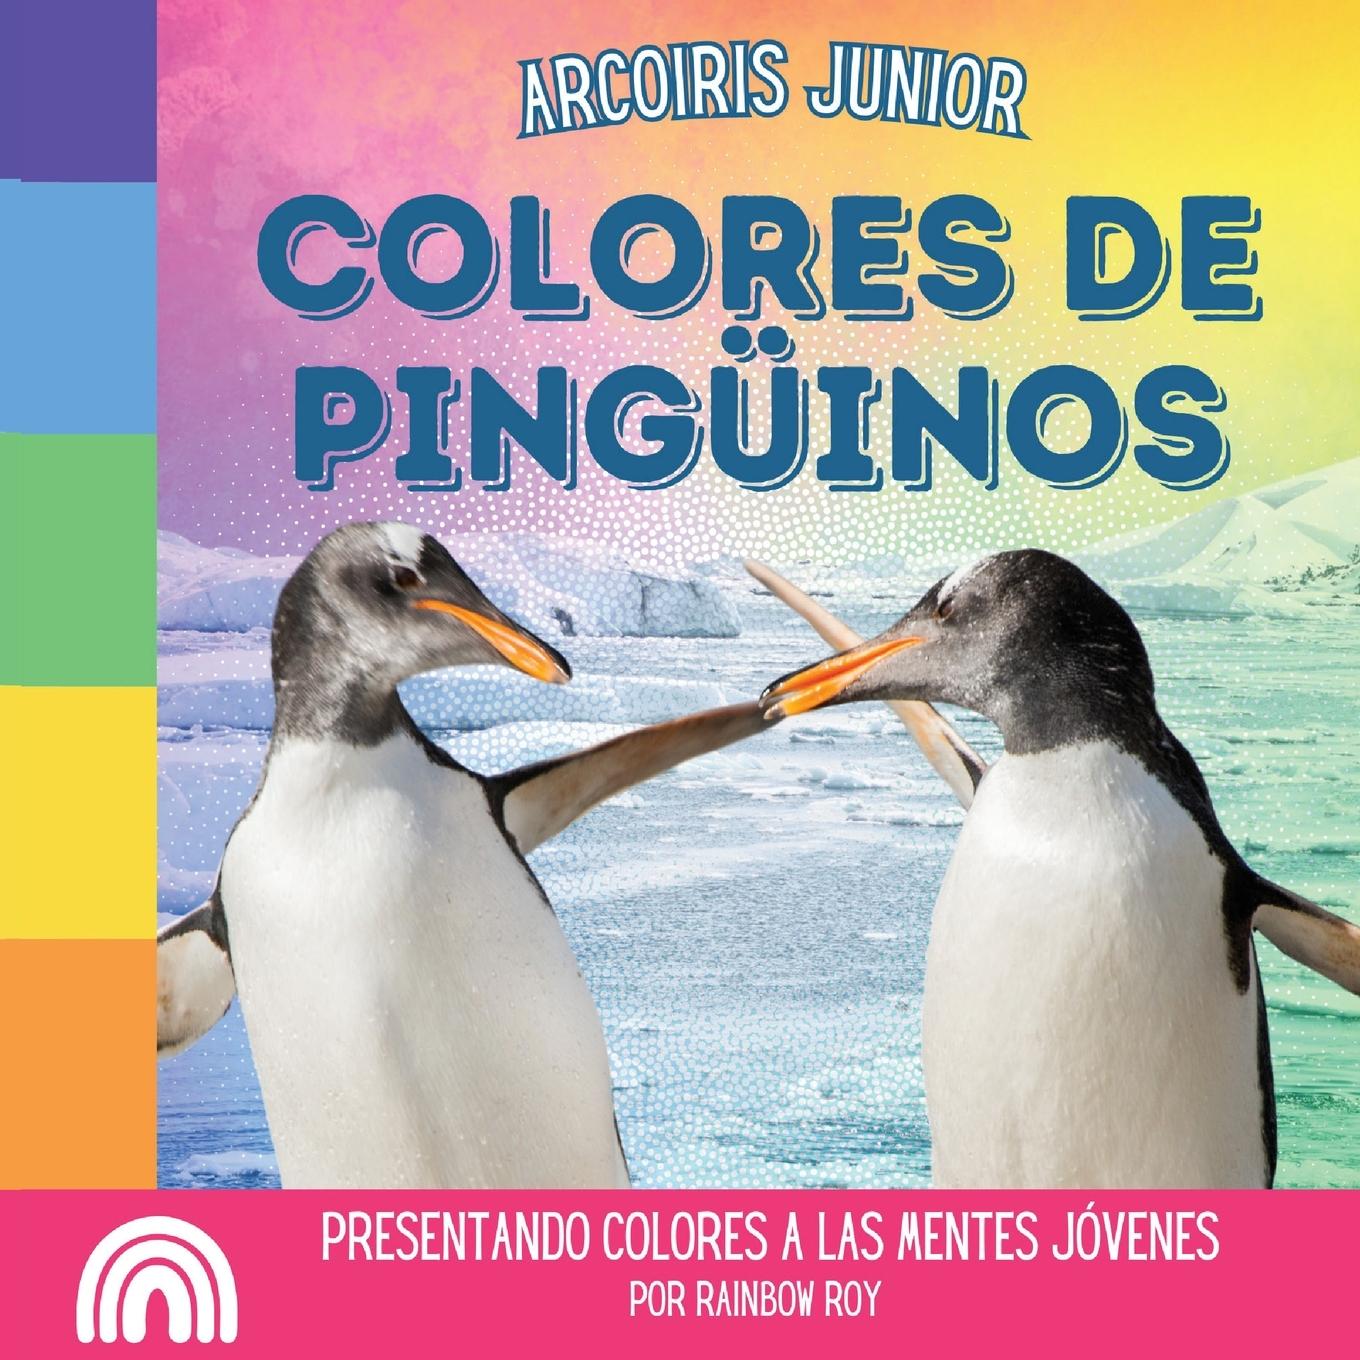 Книга Arcoiris Junior, Colores de Pinguinos 